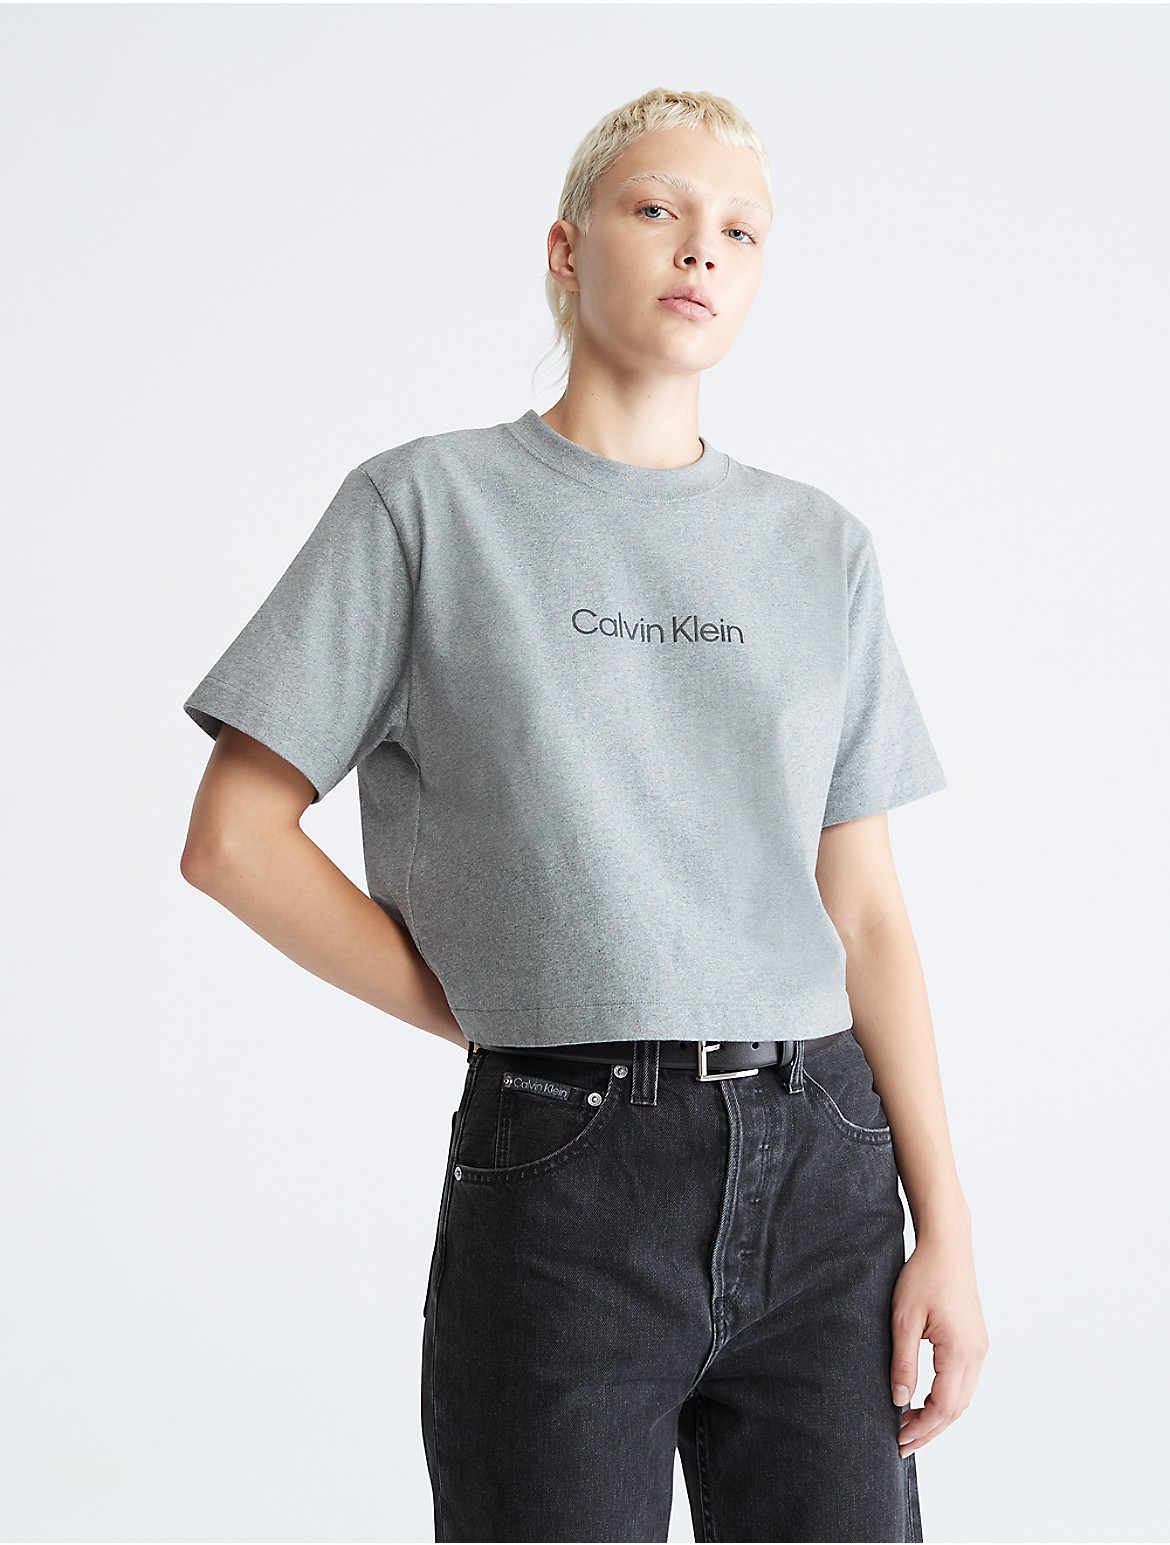 Calvin Klein Women's Relaxed Fit Standard Logo Crewneck T-Shirt - Grey - S